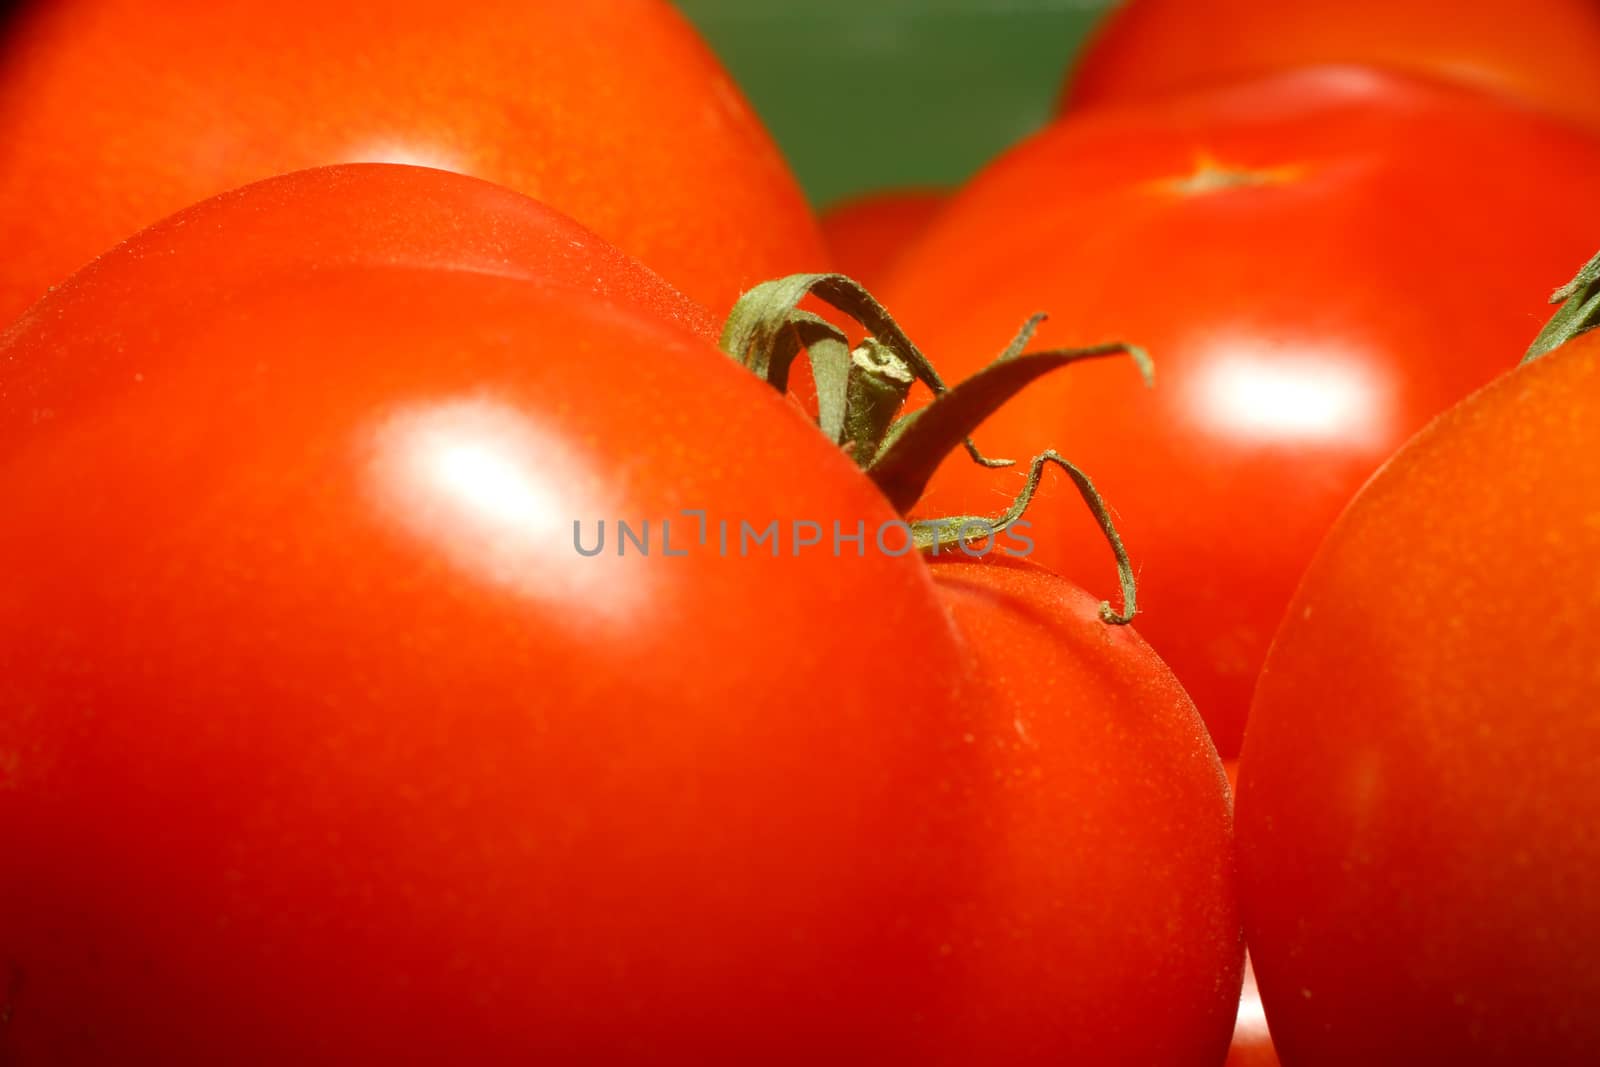 red fresh organic tomato, macro close up